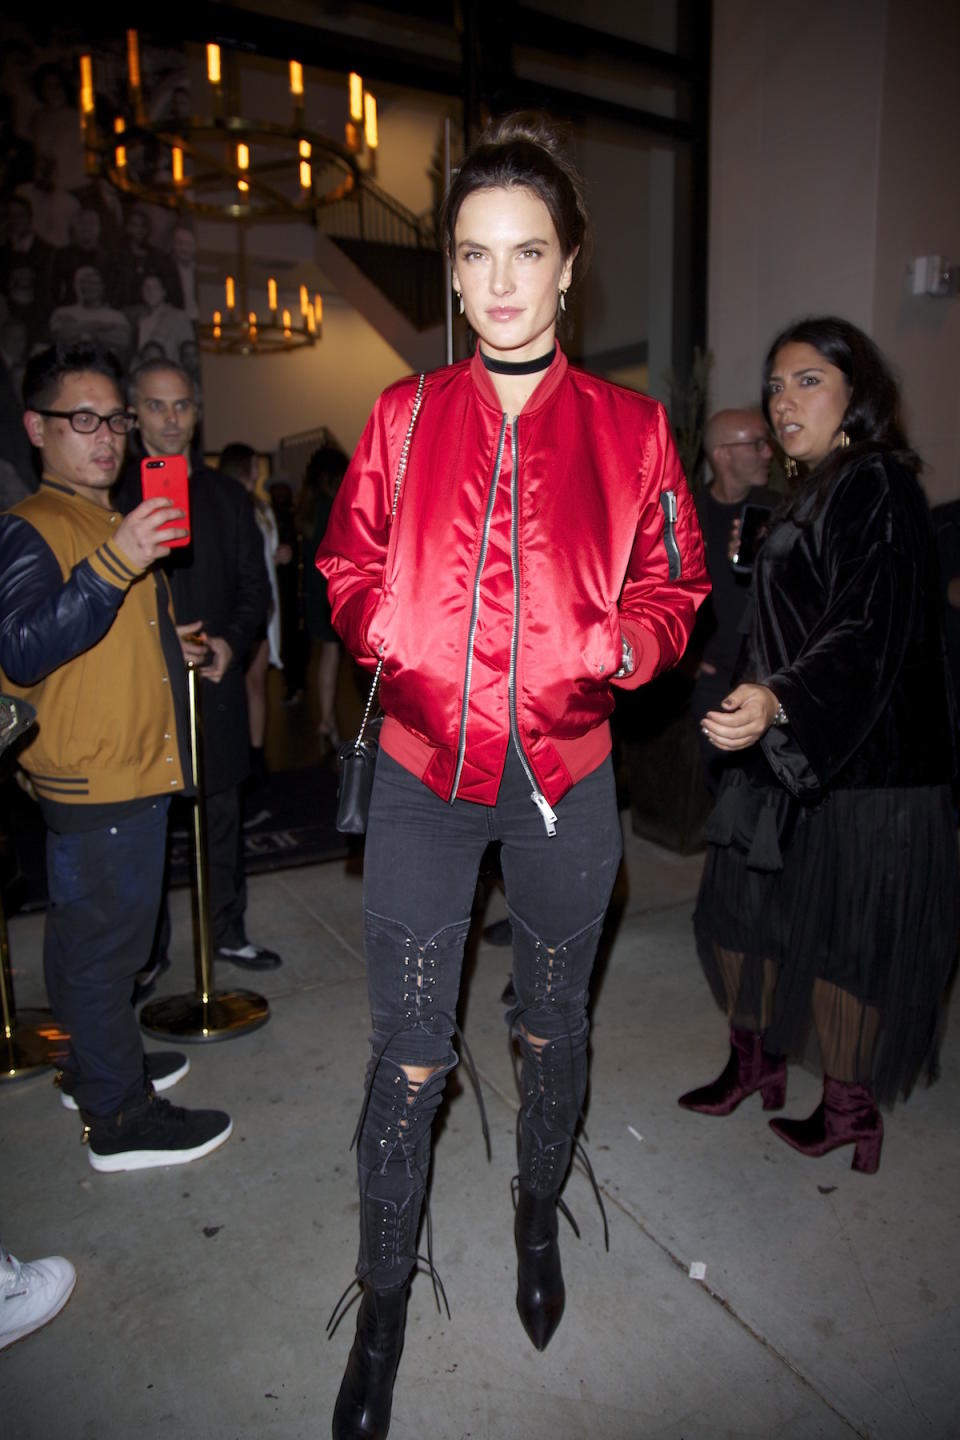 Alessandra Ambrosio bewegt sich fashionmäßig in die 90er zurück. Bomberjacke und Overknees machen den angesagten Retro-Look perfekt. (Bild: Splash News)